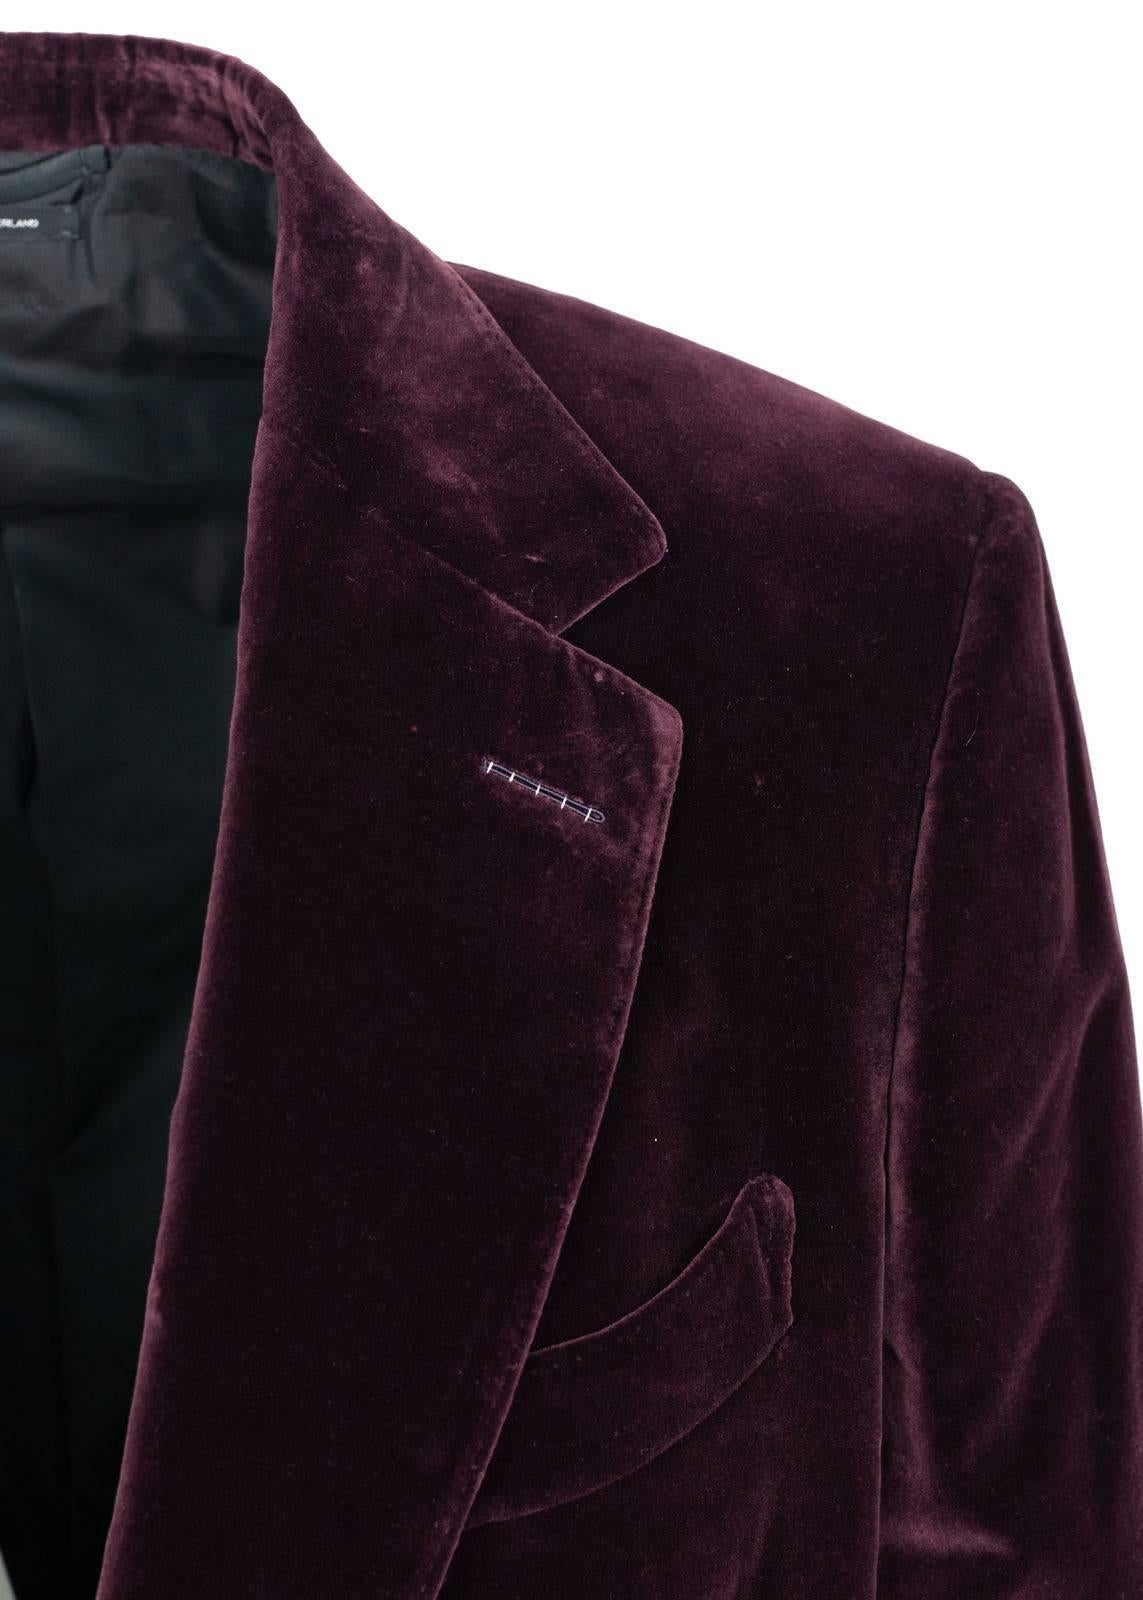 Black Tom Ford Burgundy Velvet Welted Pockets Shelton Sport Jacket Sz56R/46R RTL$3440 For Sale